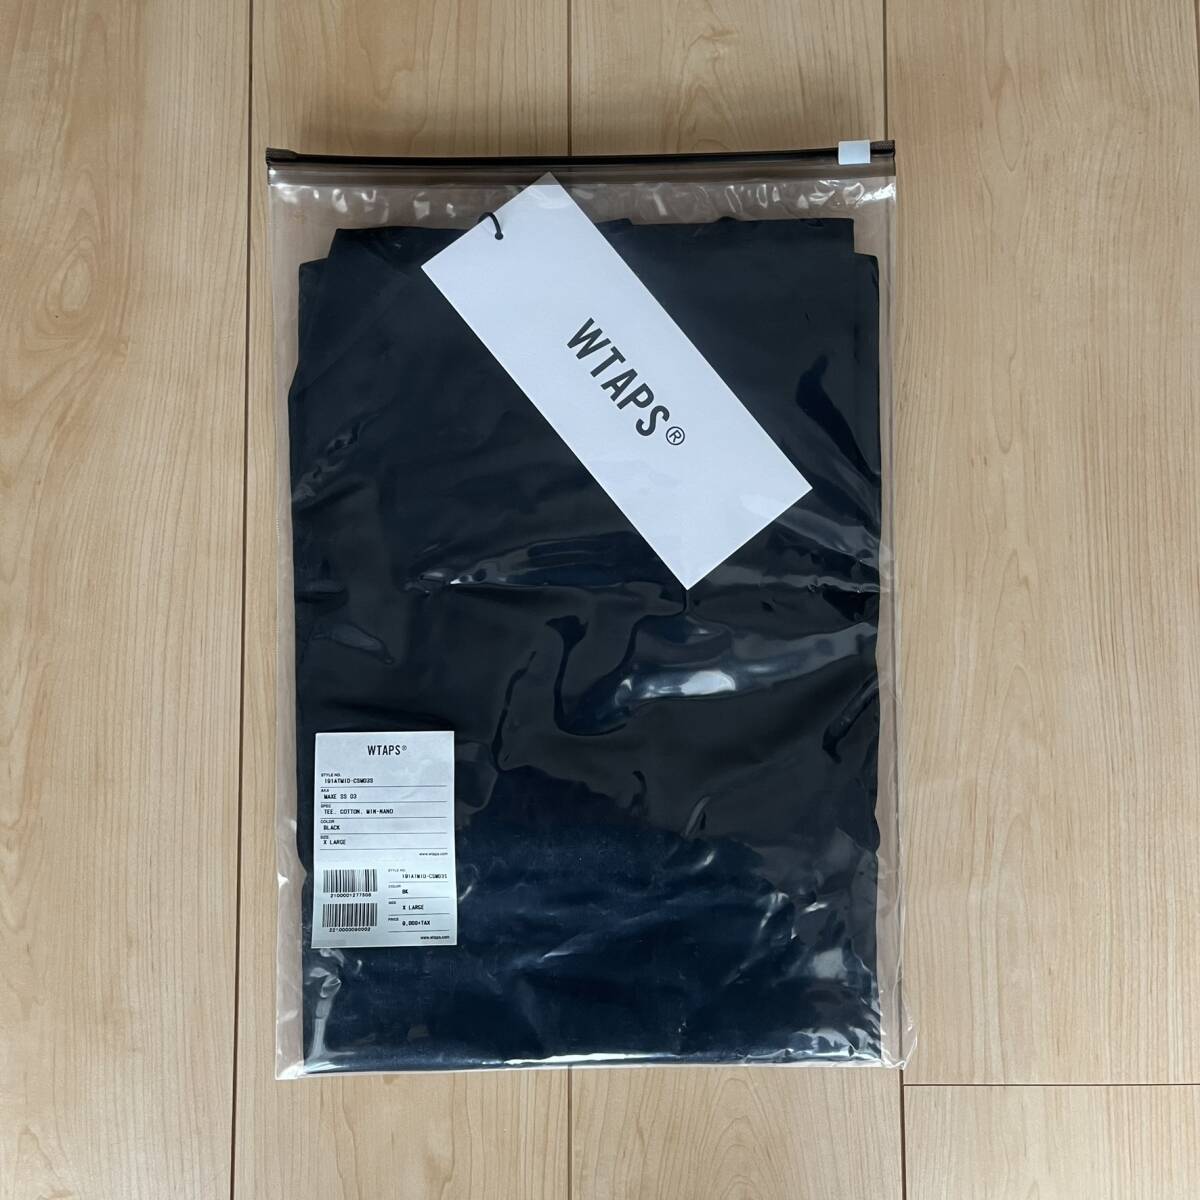 新品 外袋 タグ 欠品無 XL WTAPS MIN-NANO MAXE. DESIGN 03 S/S Tシャツ ブラック 黒 19SS ミンナノ ダブルタップス